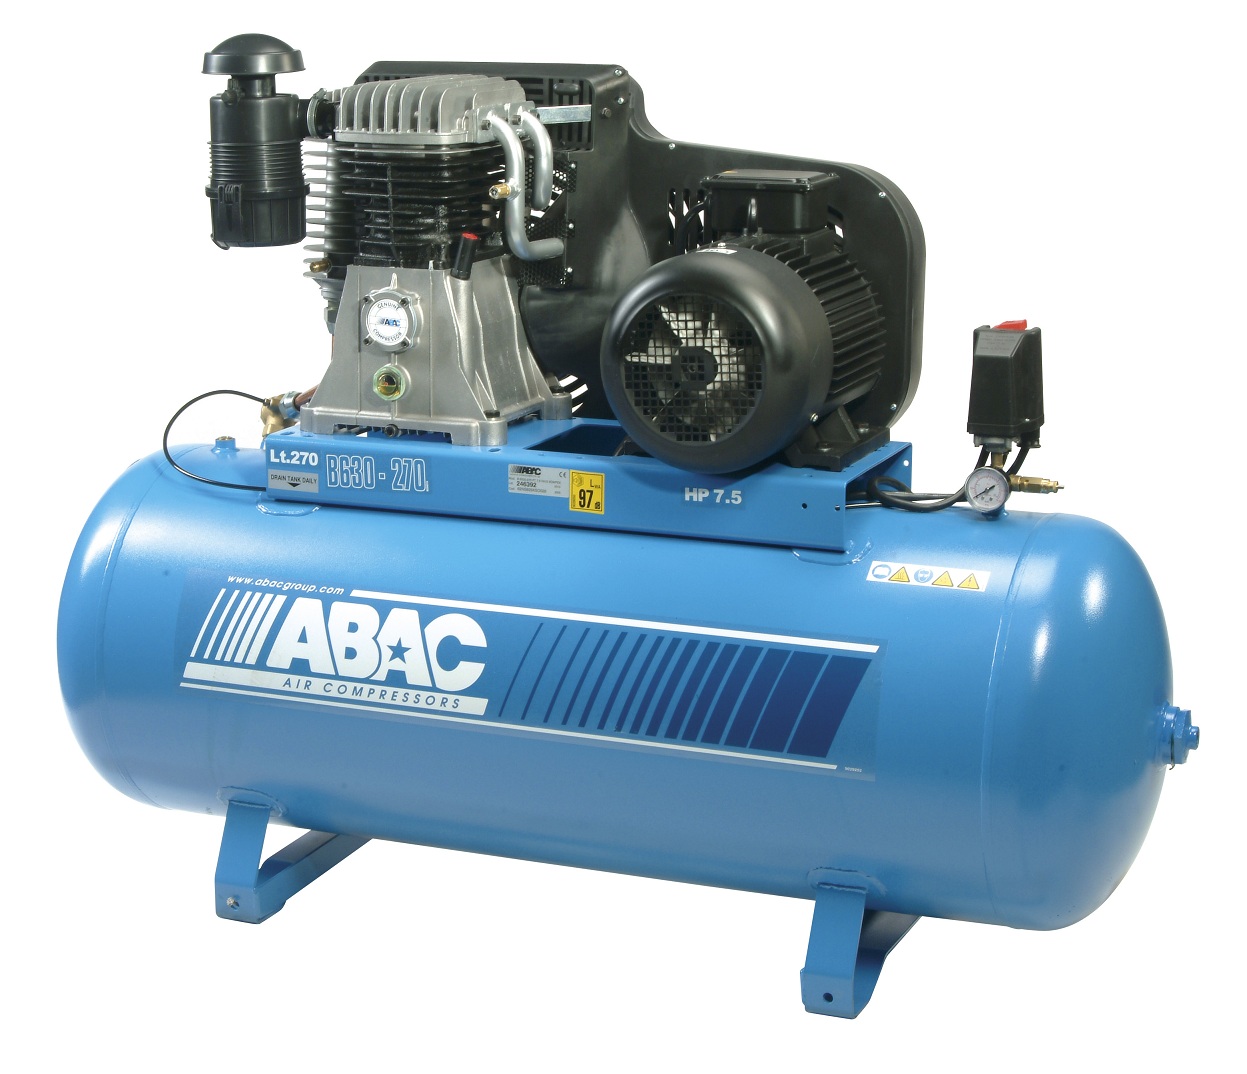 Купить воздушный компрессор в москве. ABAC Air Compressors. Компрессор поршневой ABAC 400w. Компрессор ABAC 200л. Поршневой компрессор 5hp.